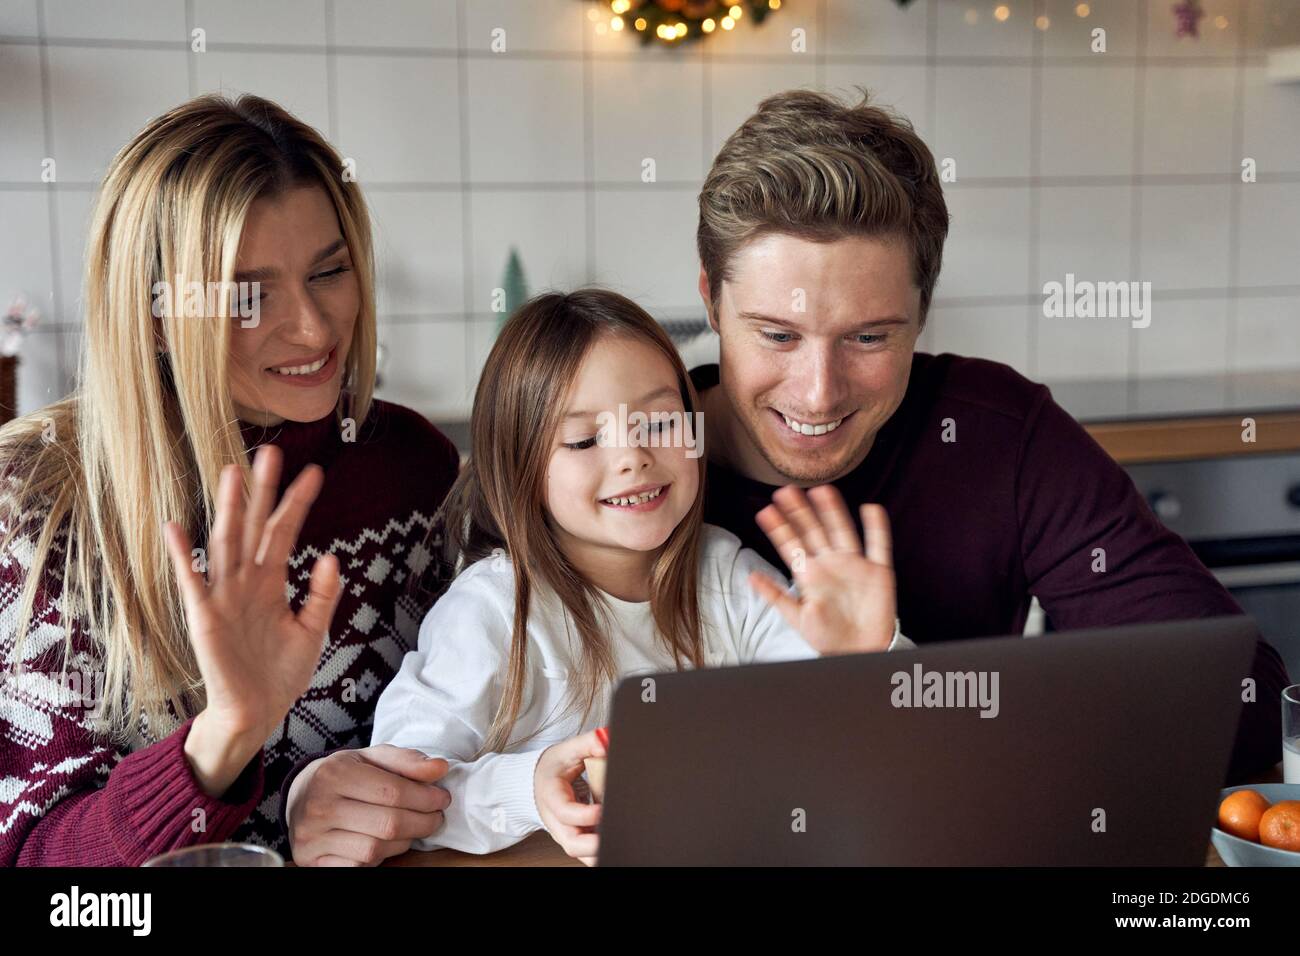 Felice famiglia con bambino figlia che usa il laptop avendo festa virtuale su videocall. Foto Stock